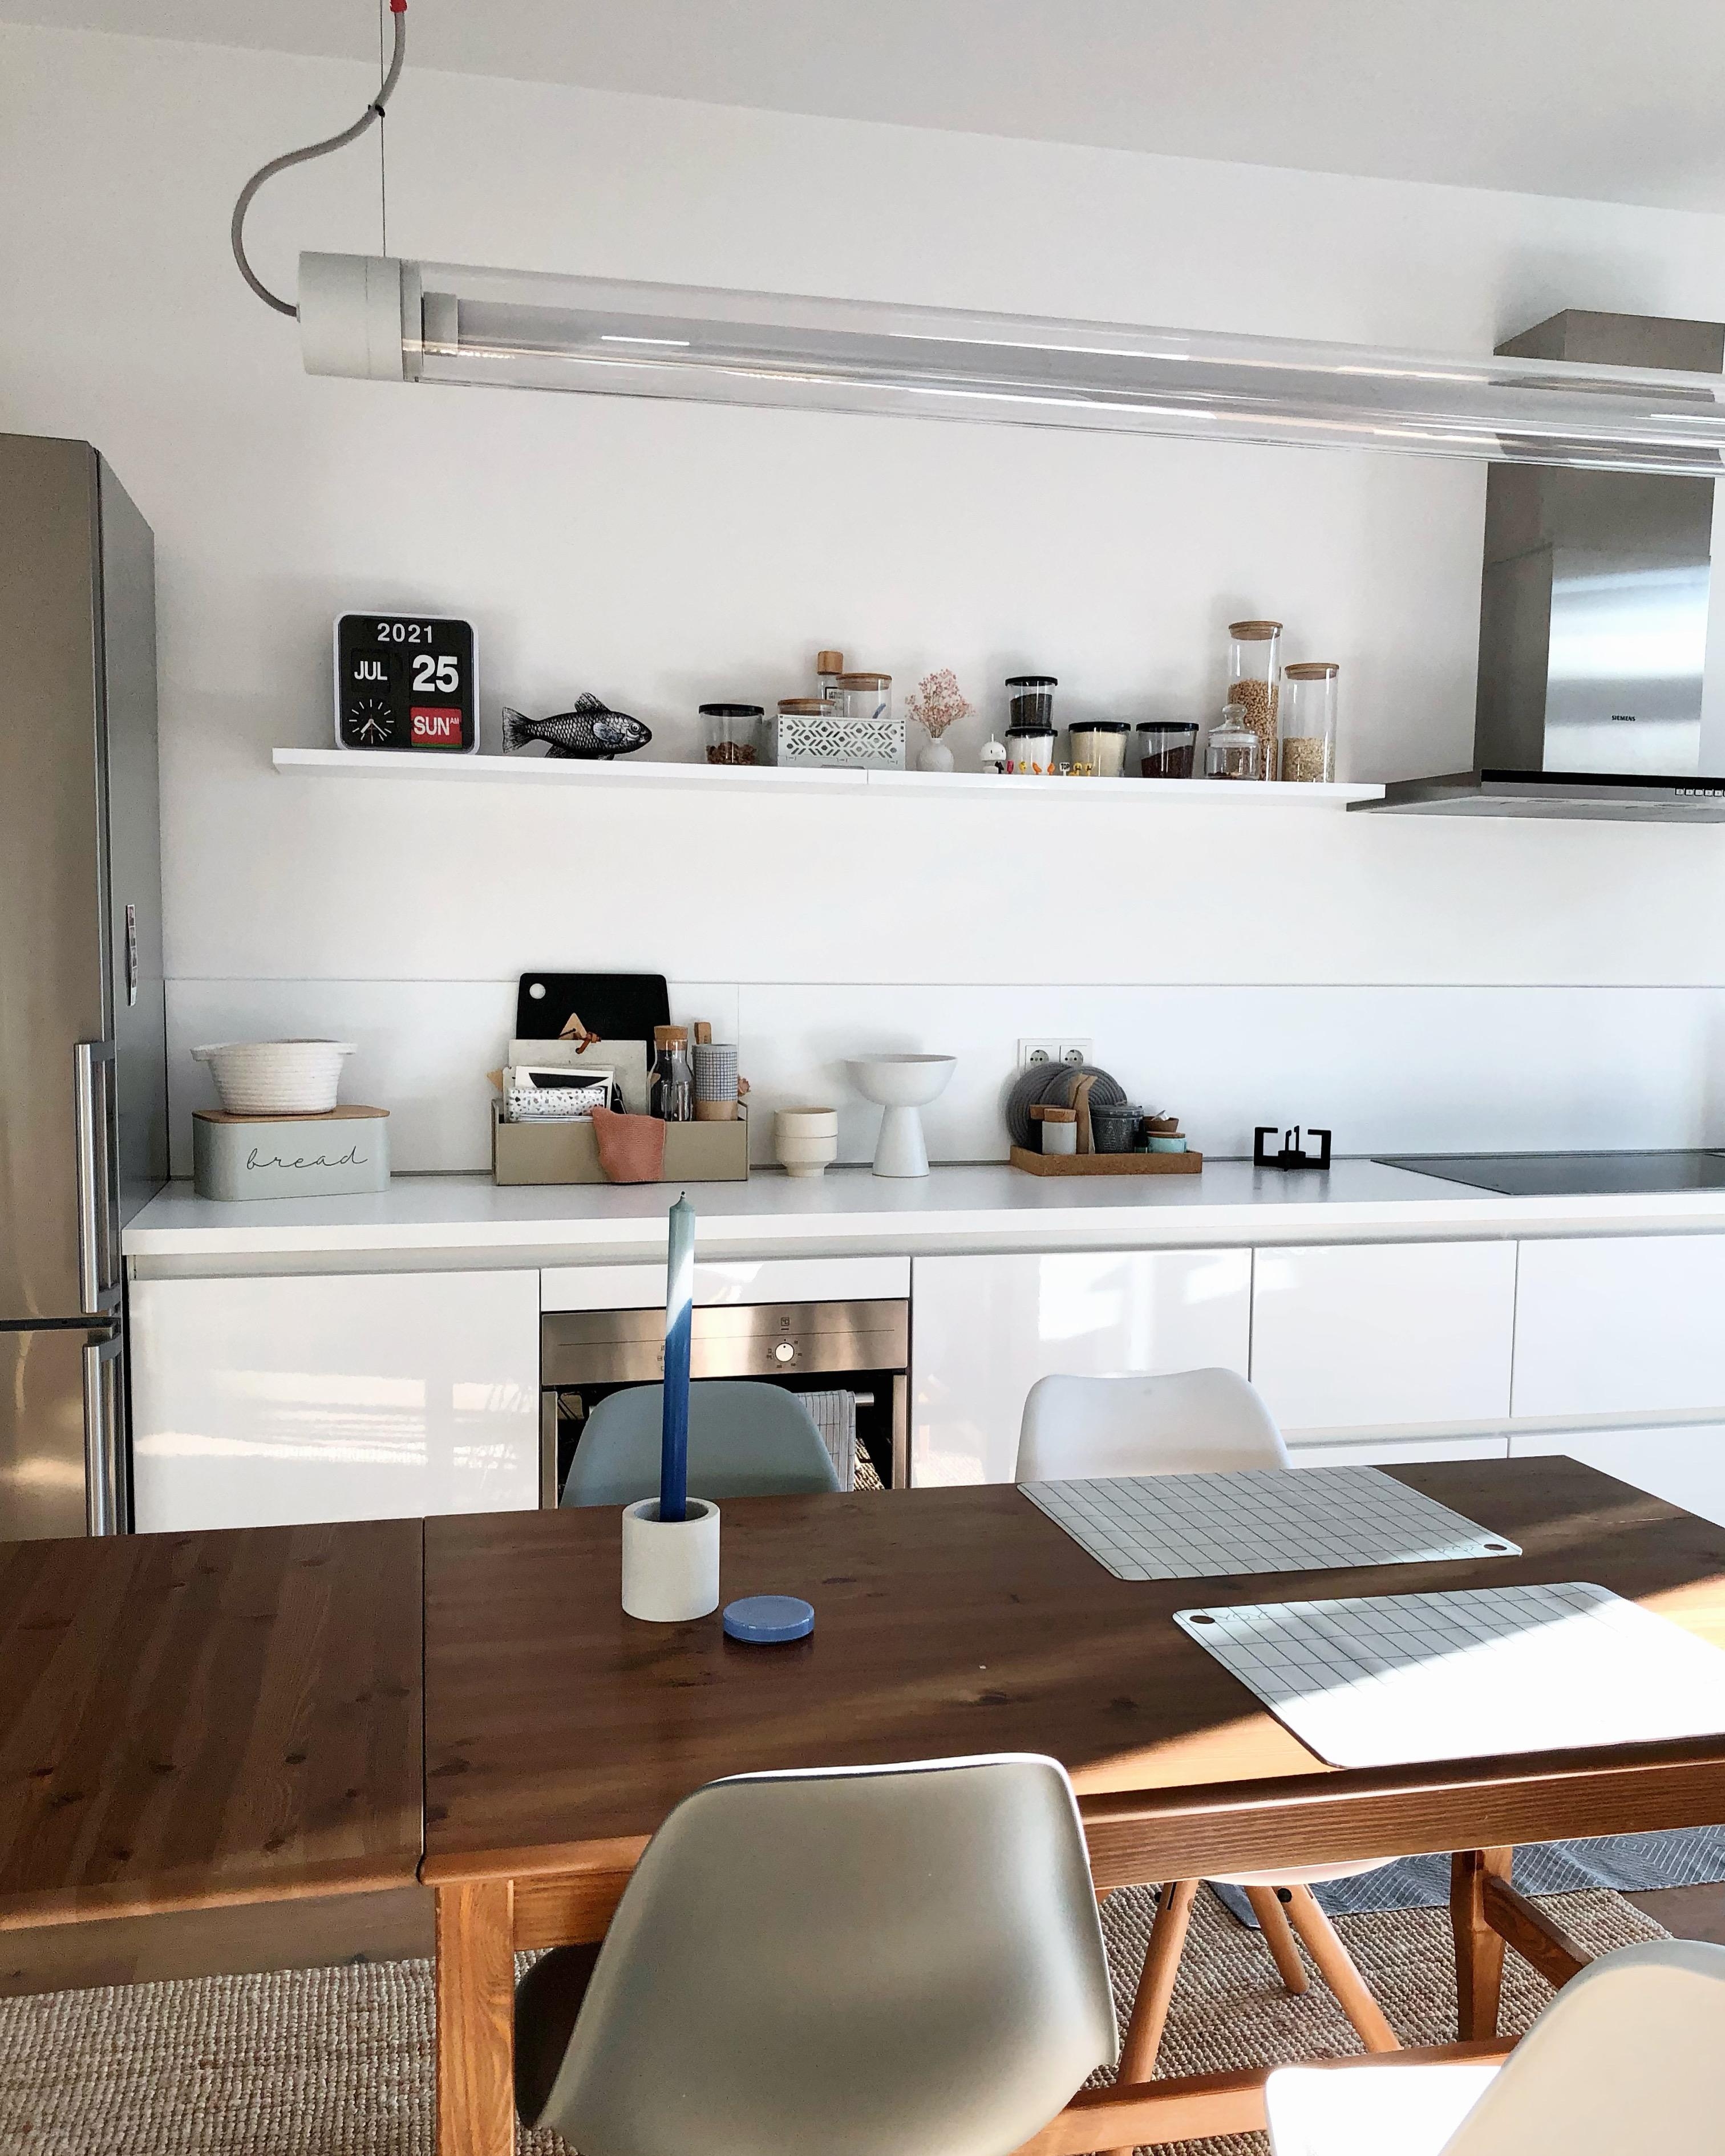 #kitchen #küche #interior #dekoidee #whitekitchen #light #tablesetting #couchstyle #esstisch #sunday #home #homedecor